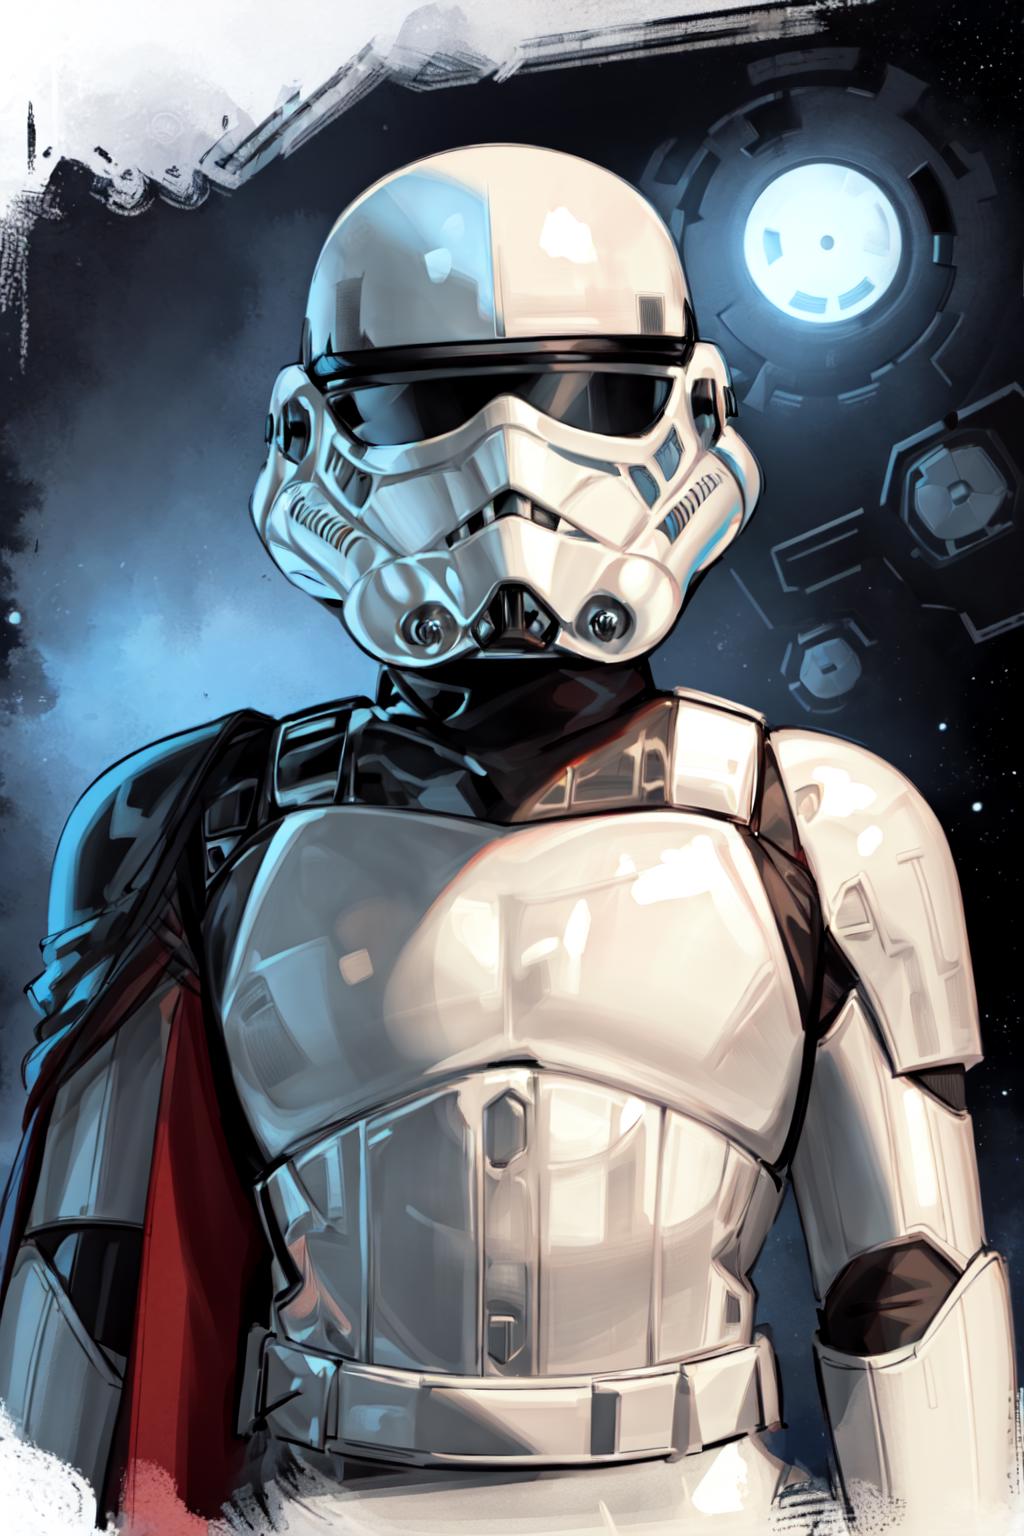 Storm Trooper - Star Wars image by ZoochMan